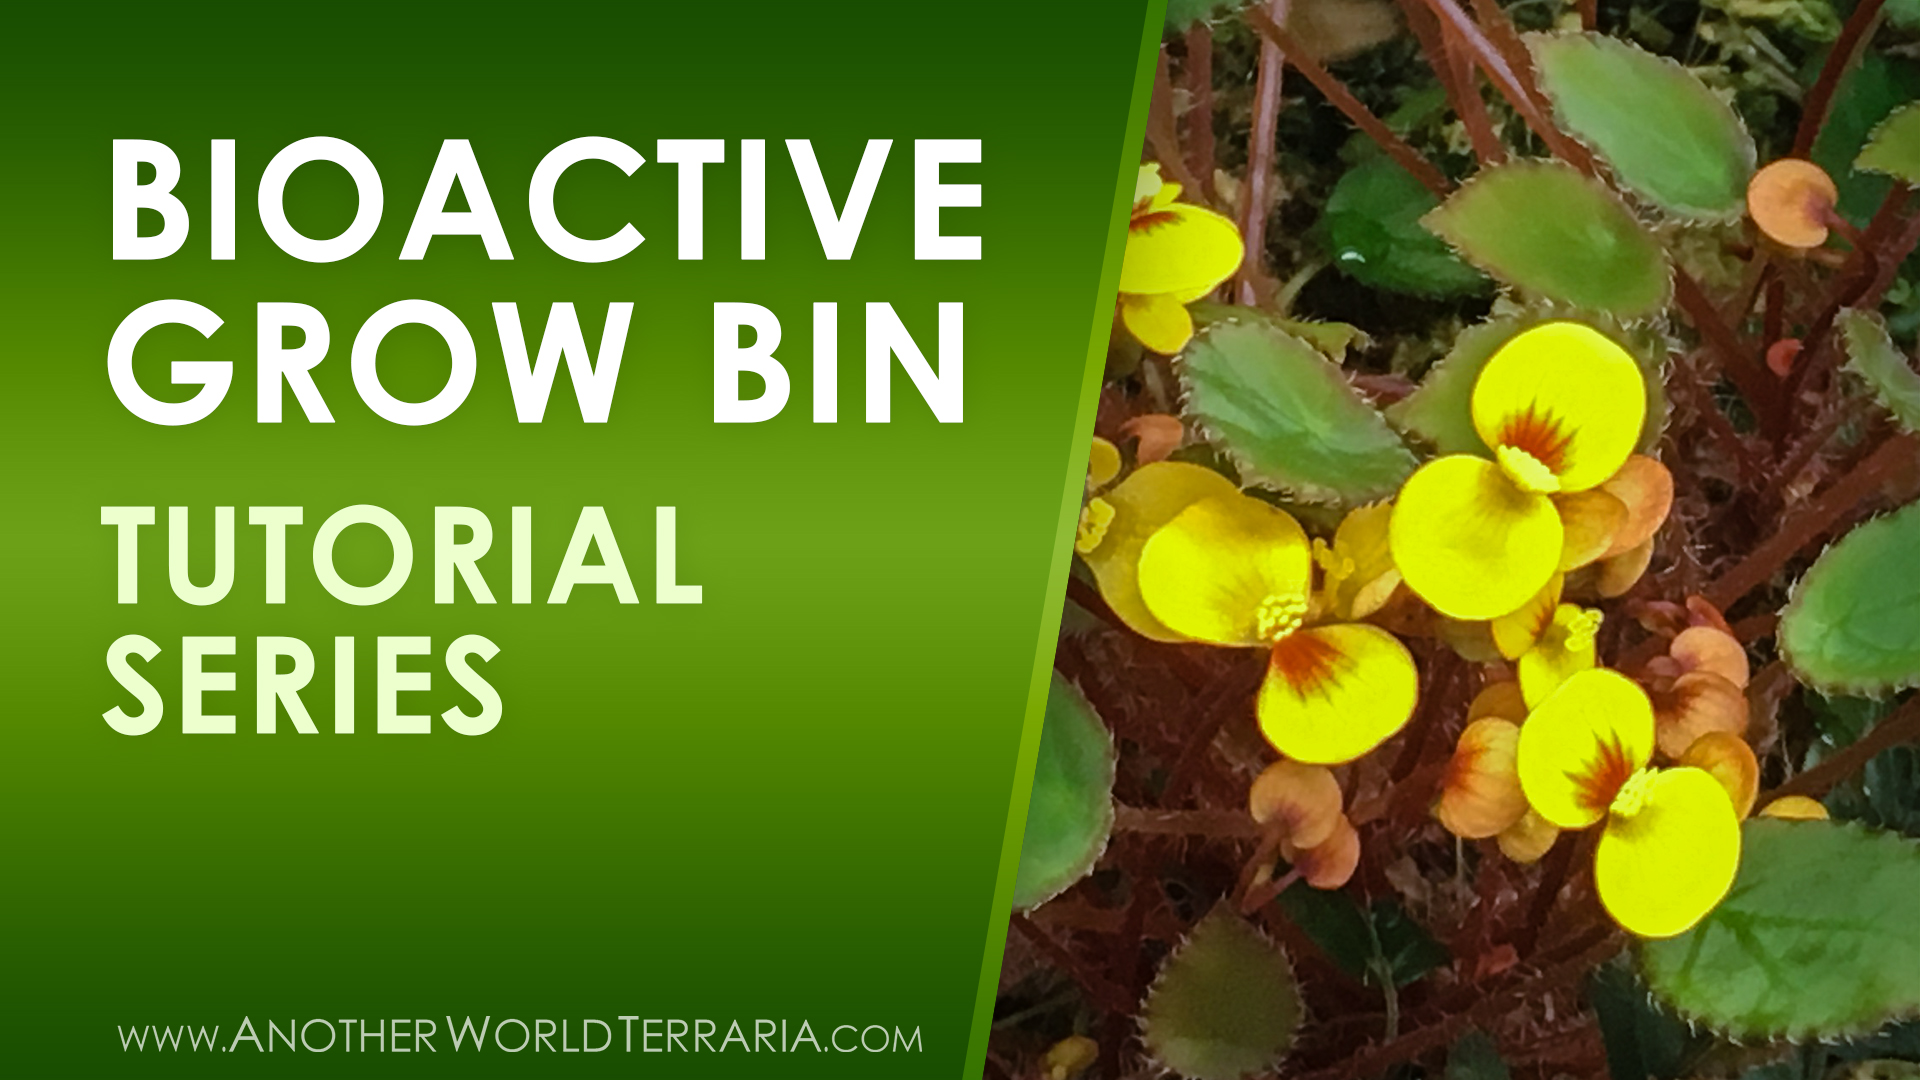 Bioactive Grow Bin Tutorial Series